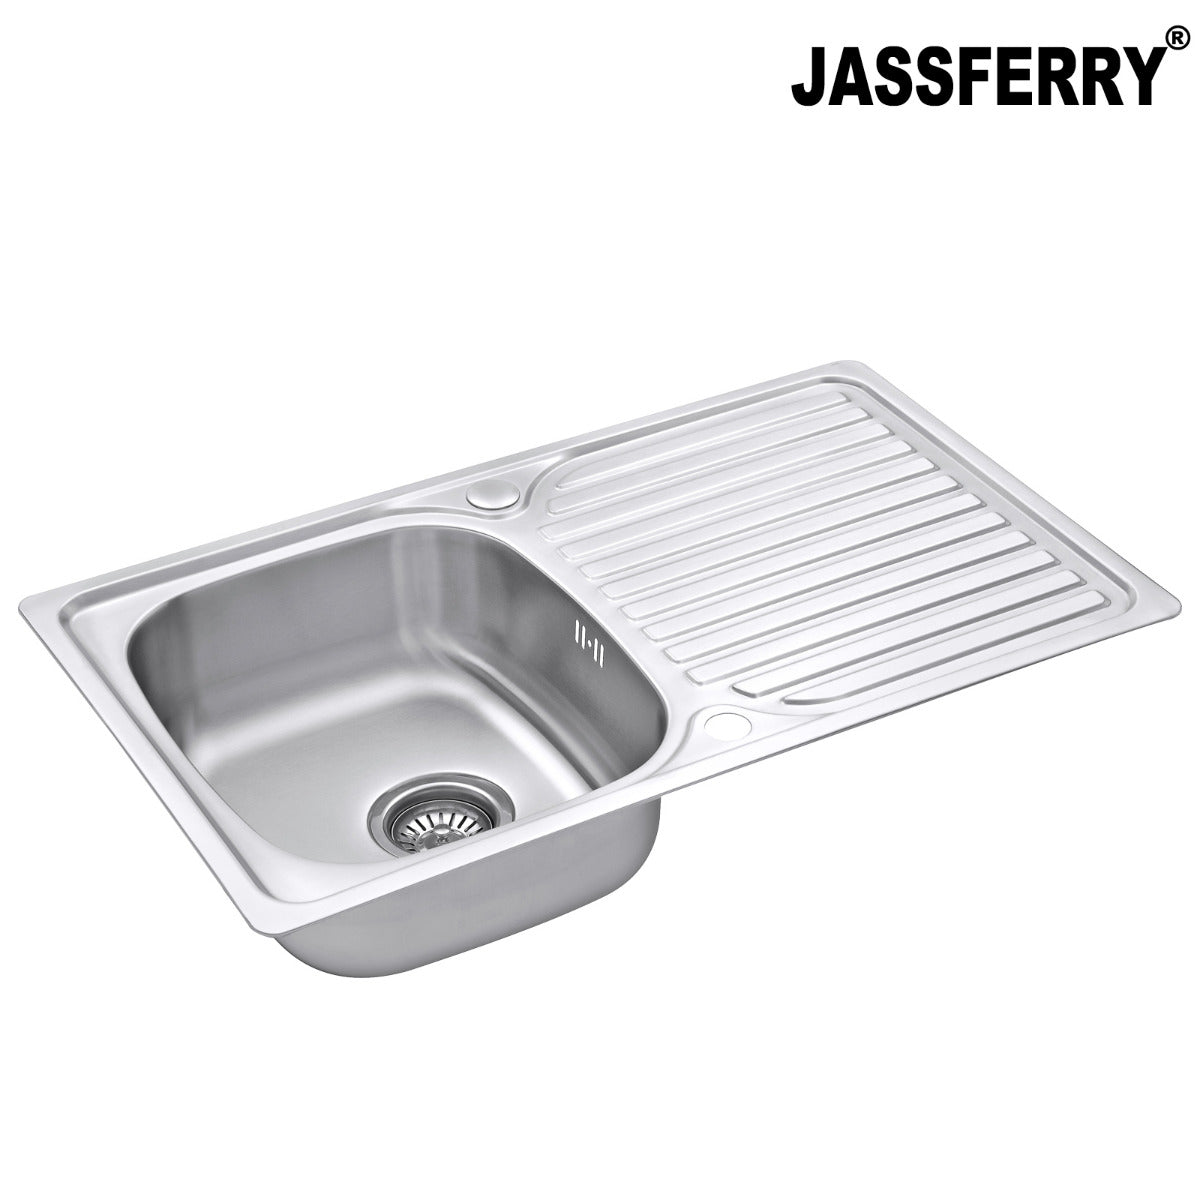 JassferryJASSFERRY Stainless Steel Kitchen Sink Inset Single 1 Bowl Reversible Drainer - 834BKitchen Sinks